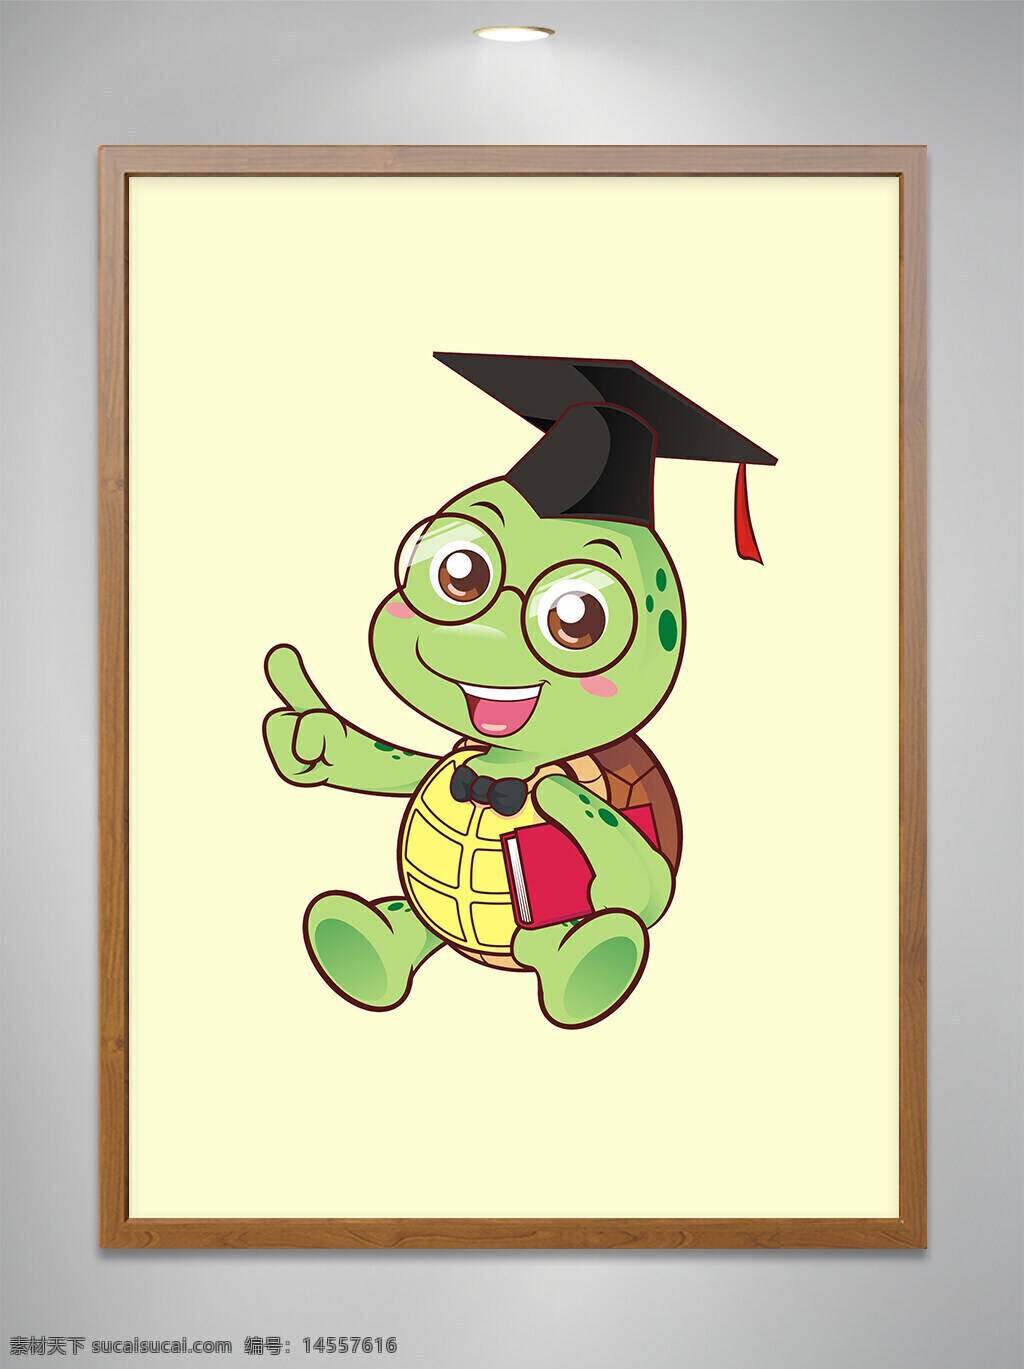 卡通原创 卡通吉祥物 卡通动物 卡通可爱小乌龟 卡通可爱小乌龟博士 卡通可爱小乌龟博士拿书 cdr矢量图